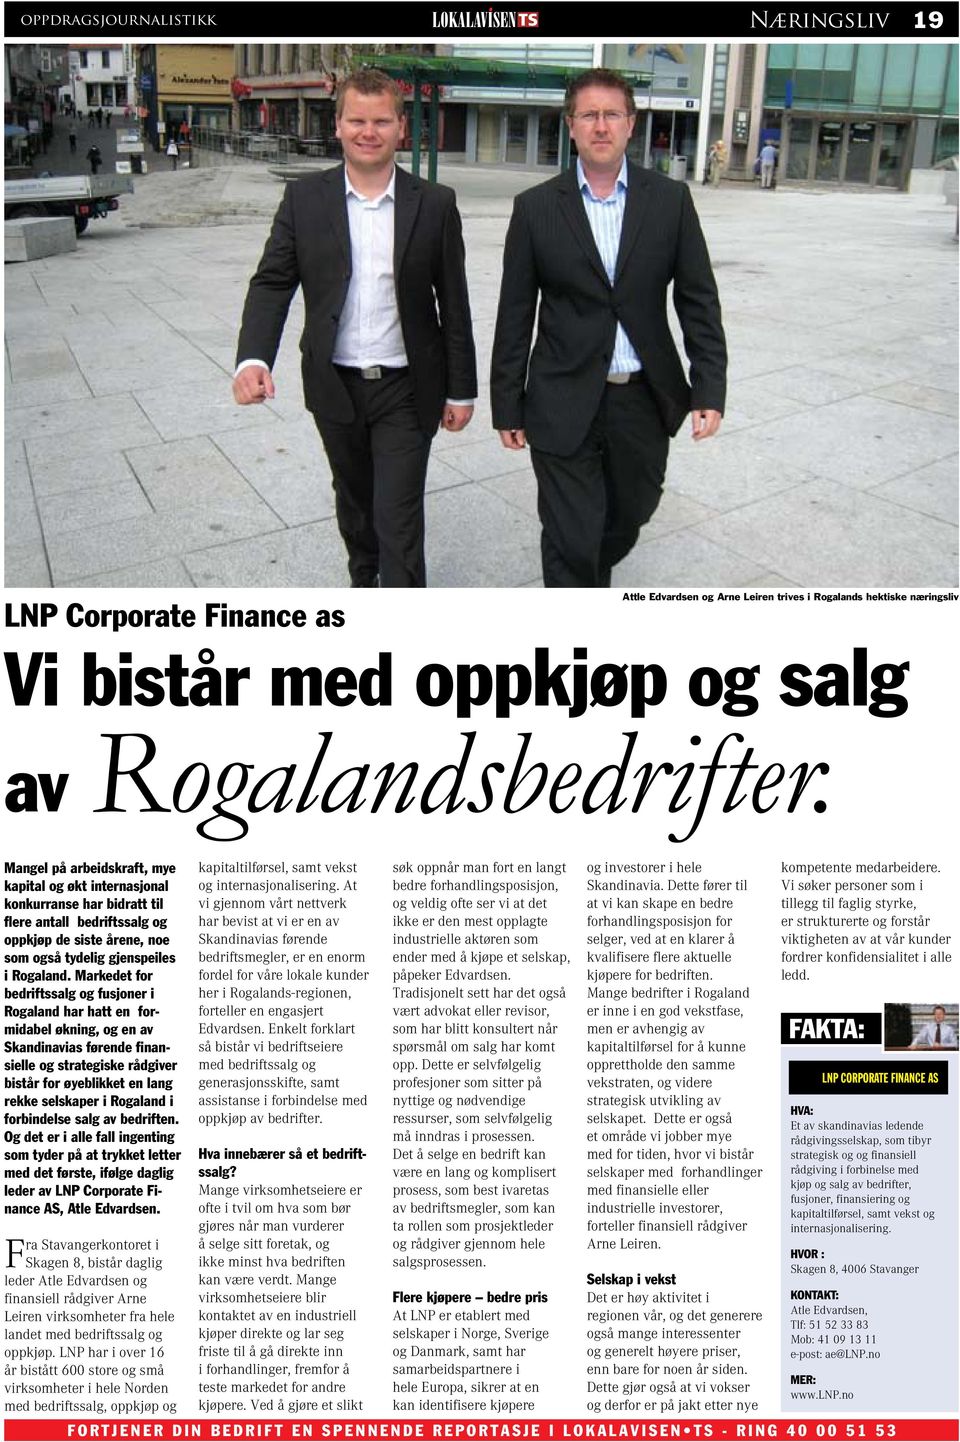 Markedet for bedriftssalg og fusjoner i Rogaland har hatt en formidabel økning, og en av Skandinavias førende finansielle og strategiske rådgiver bistår for øyeblikket en lang rekke selskaper i